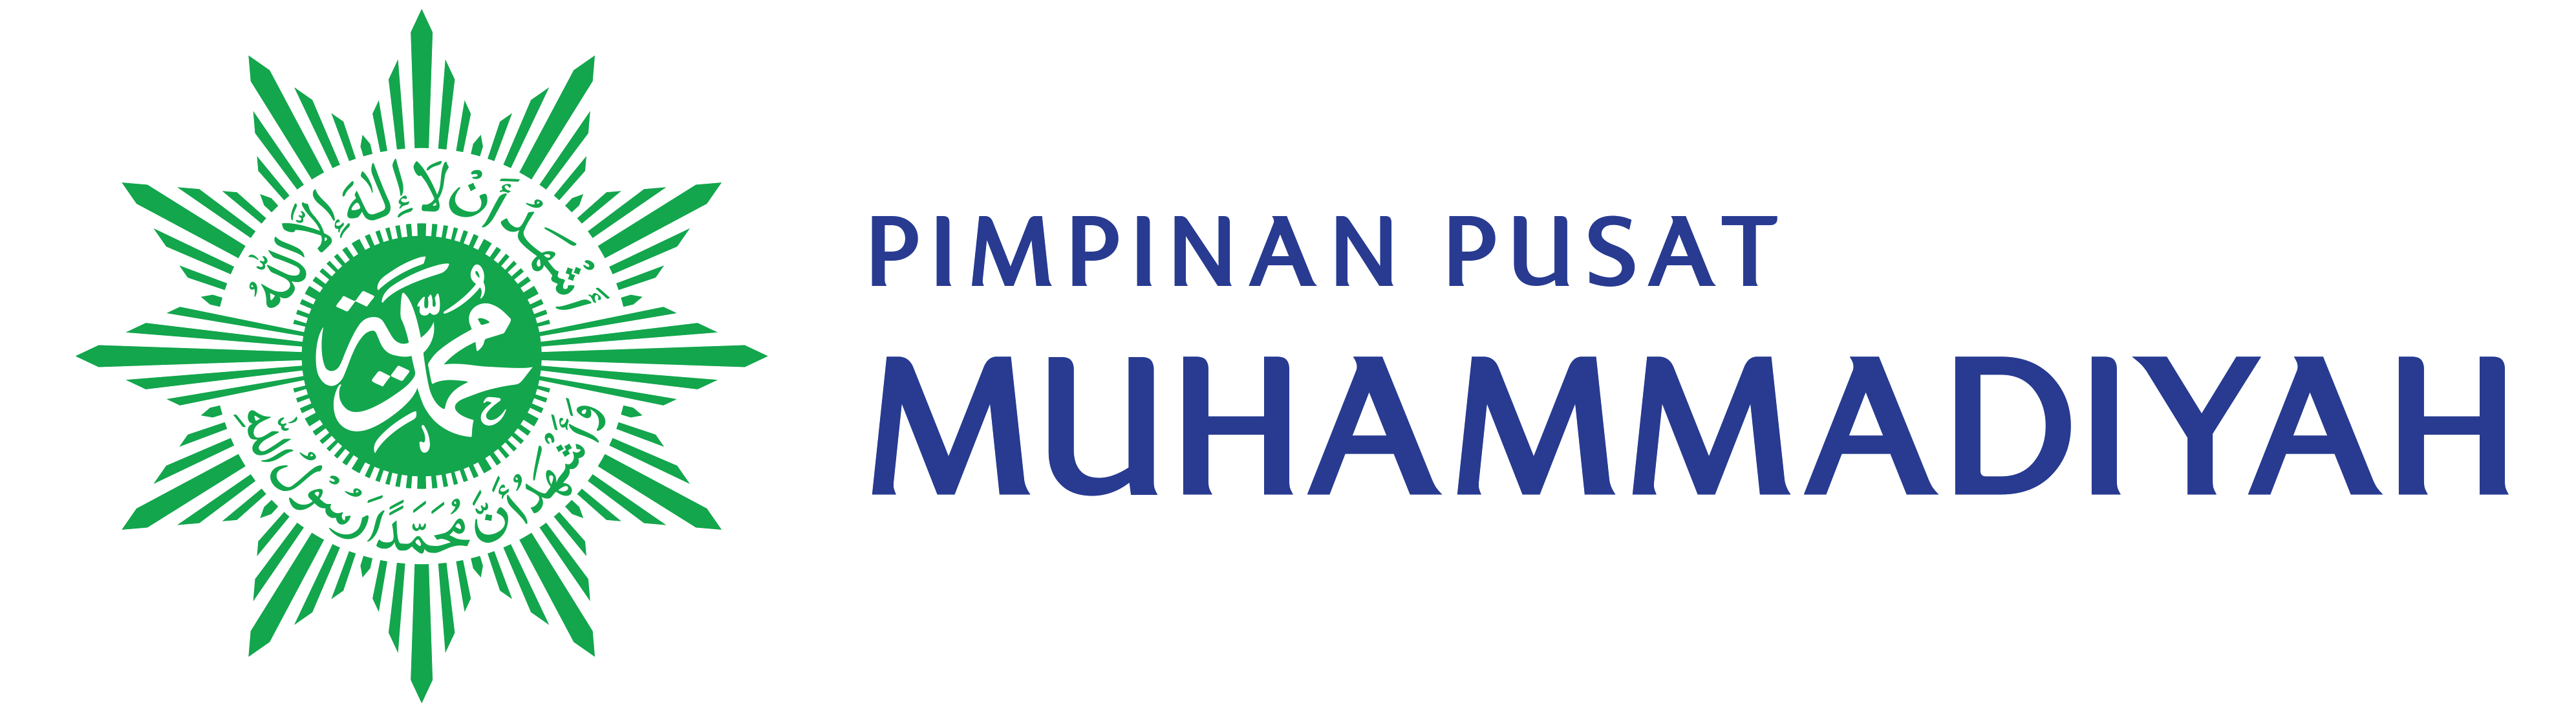 logo muhammadiyah medcom web1